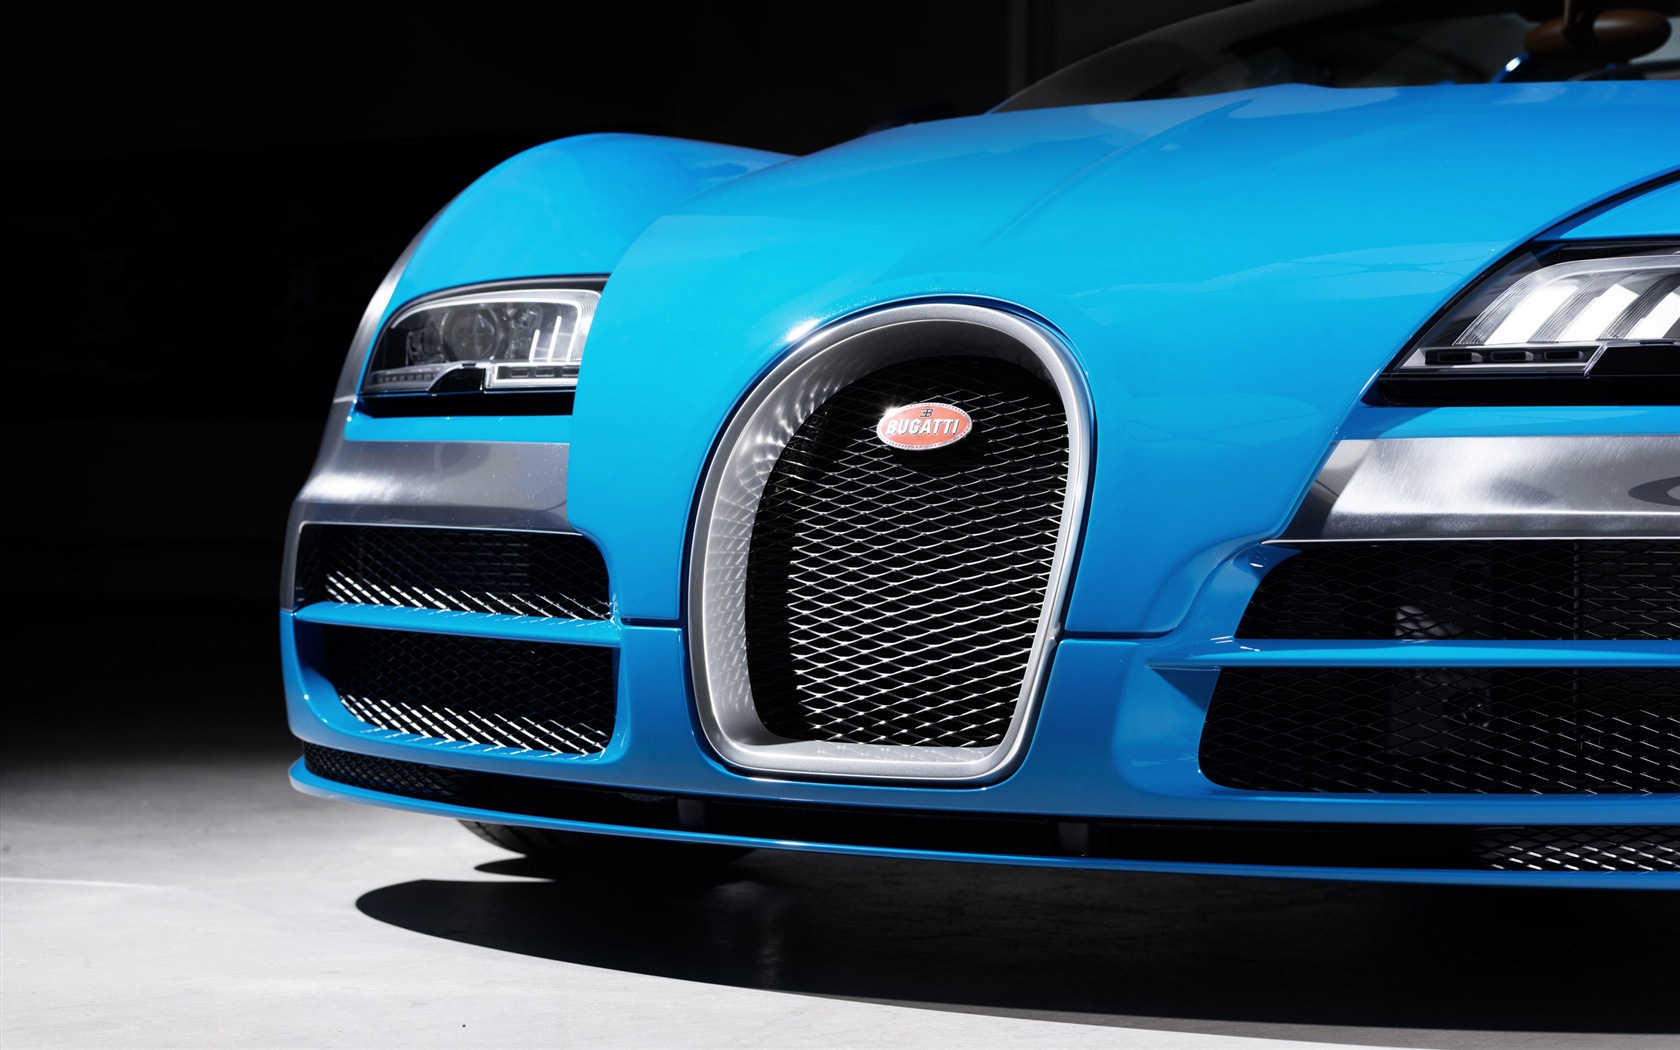 2013 Bugatti Veyron 16.4 Grand Sport Vitesse supercar fondos de pantalla de alta definición #3 - 1680x1050